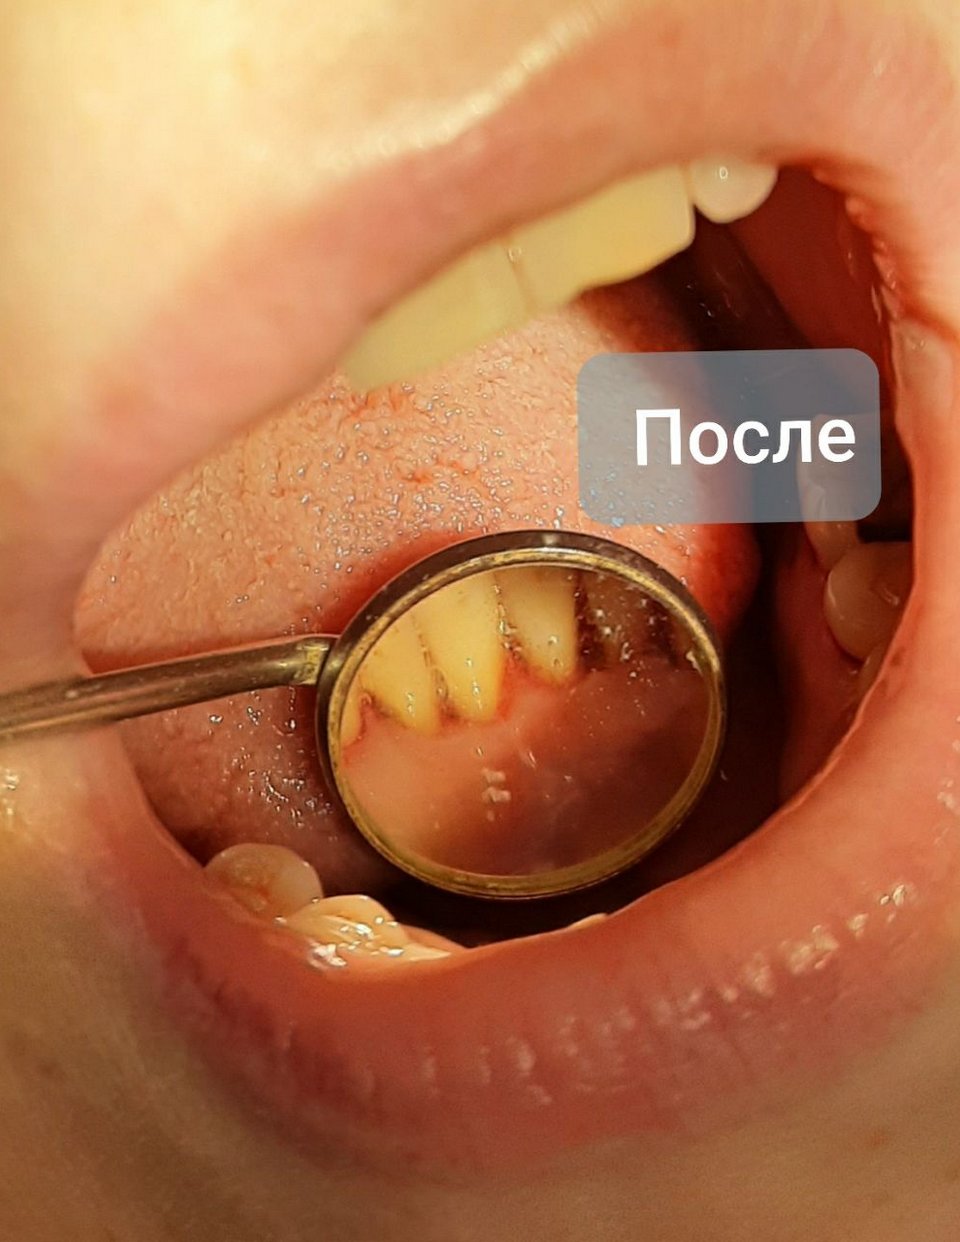 Гигиена полости рта. Фото после процедуры